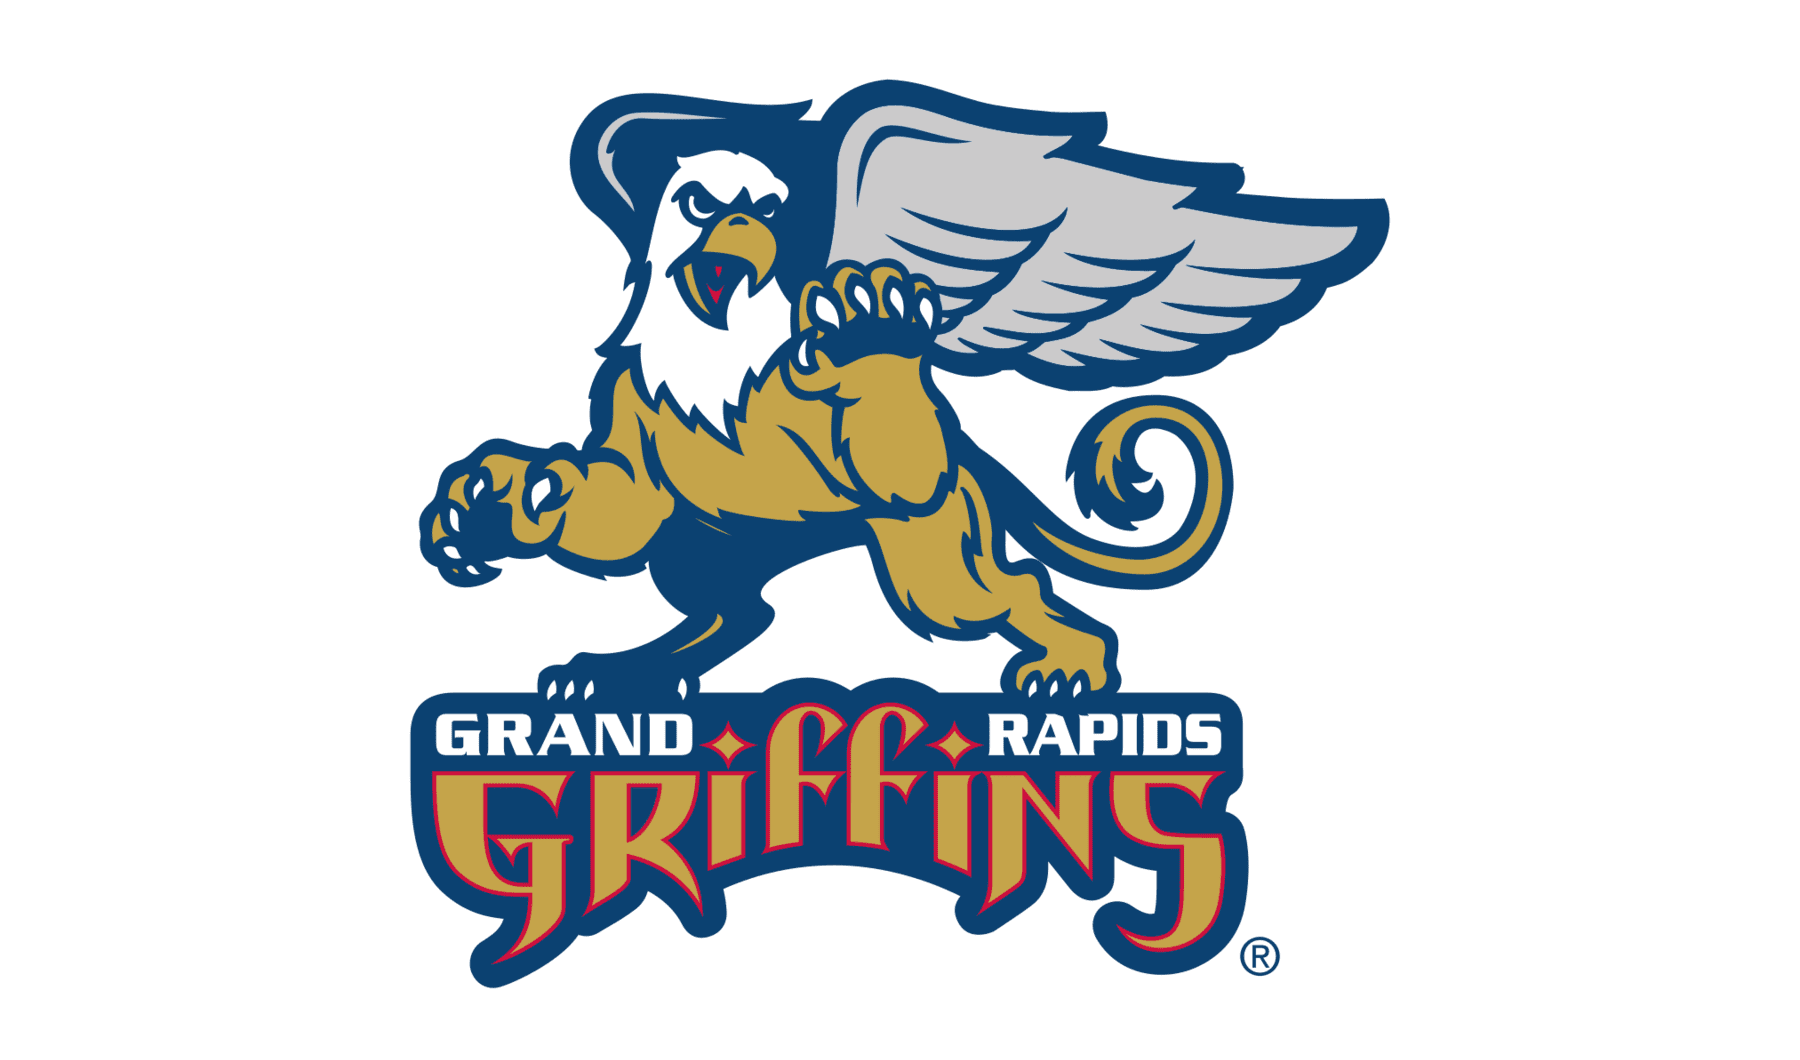 Grand Rapids Griffins unveil new uniforms, logo change 